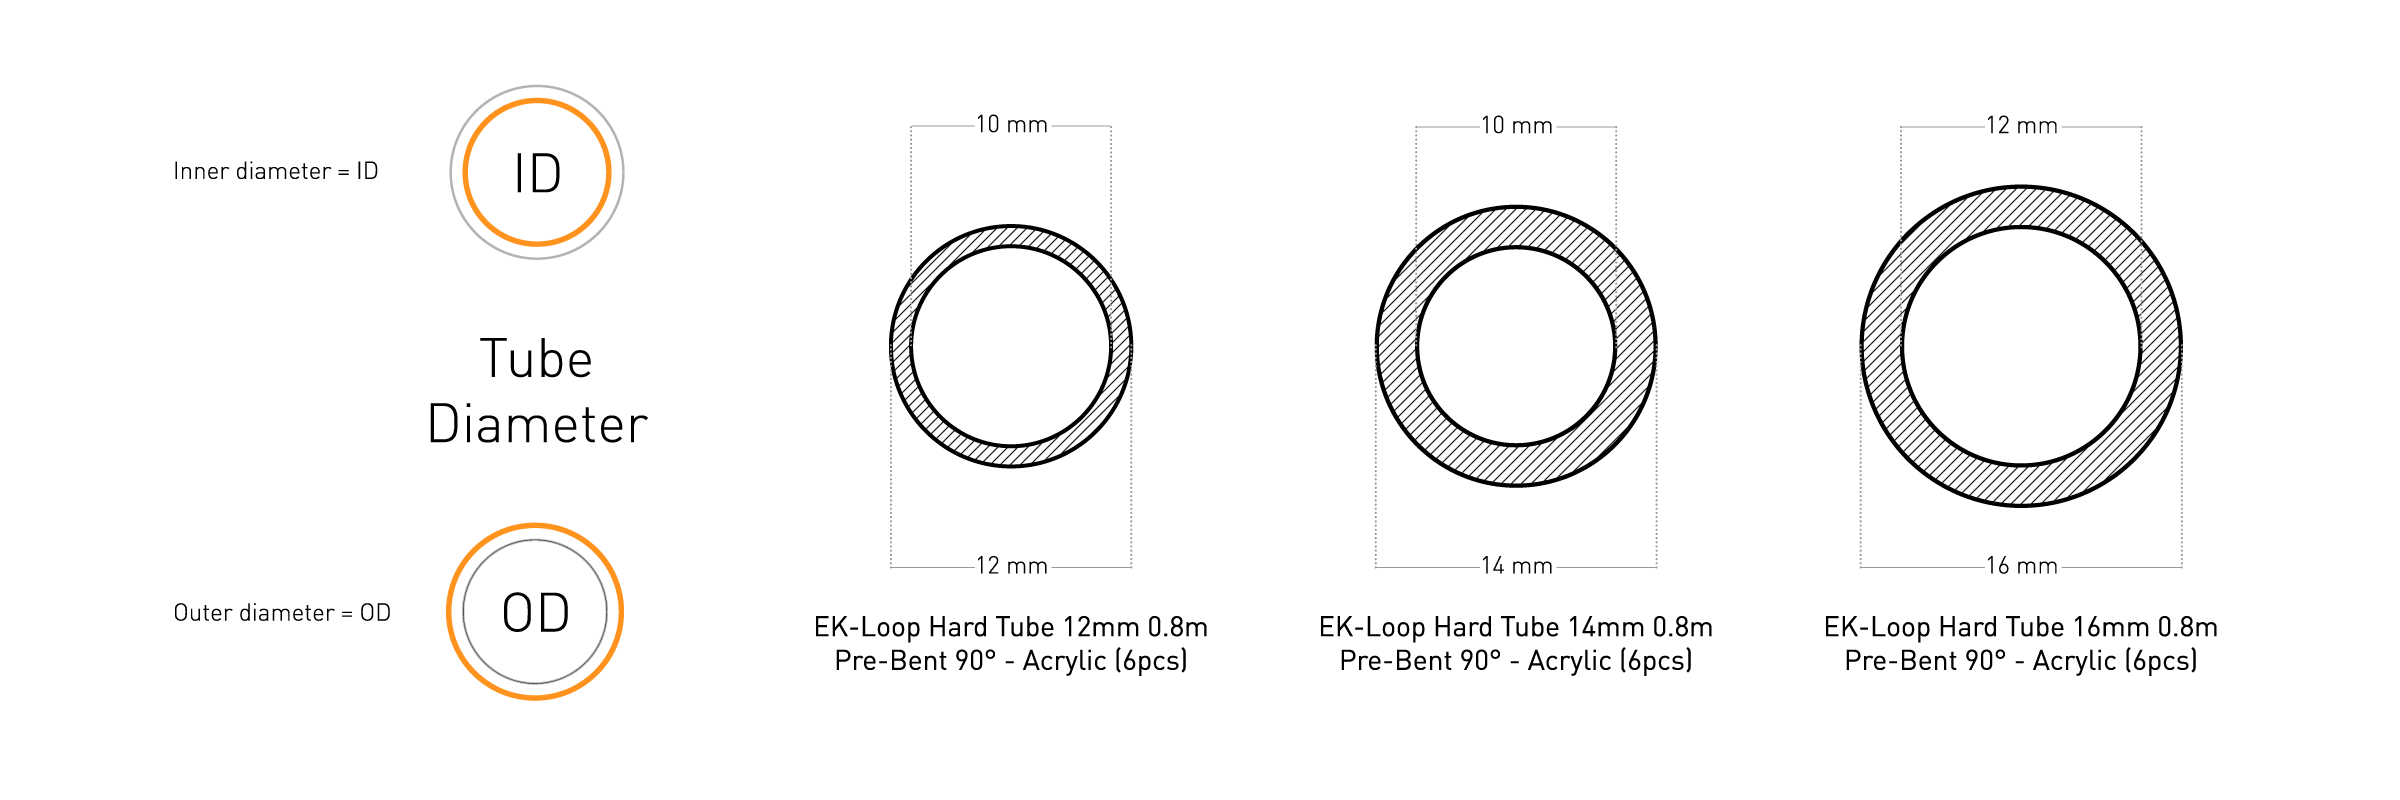 EK-Loop_Hard_Tube_12-14-16mm_0.8m_Pre-Bent_90°-Acrylic_PR_2